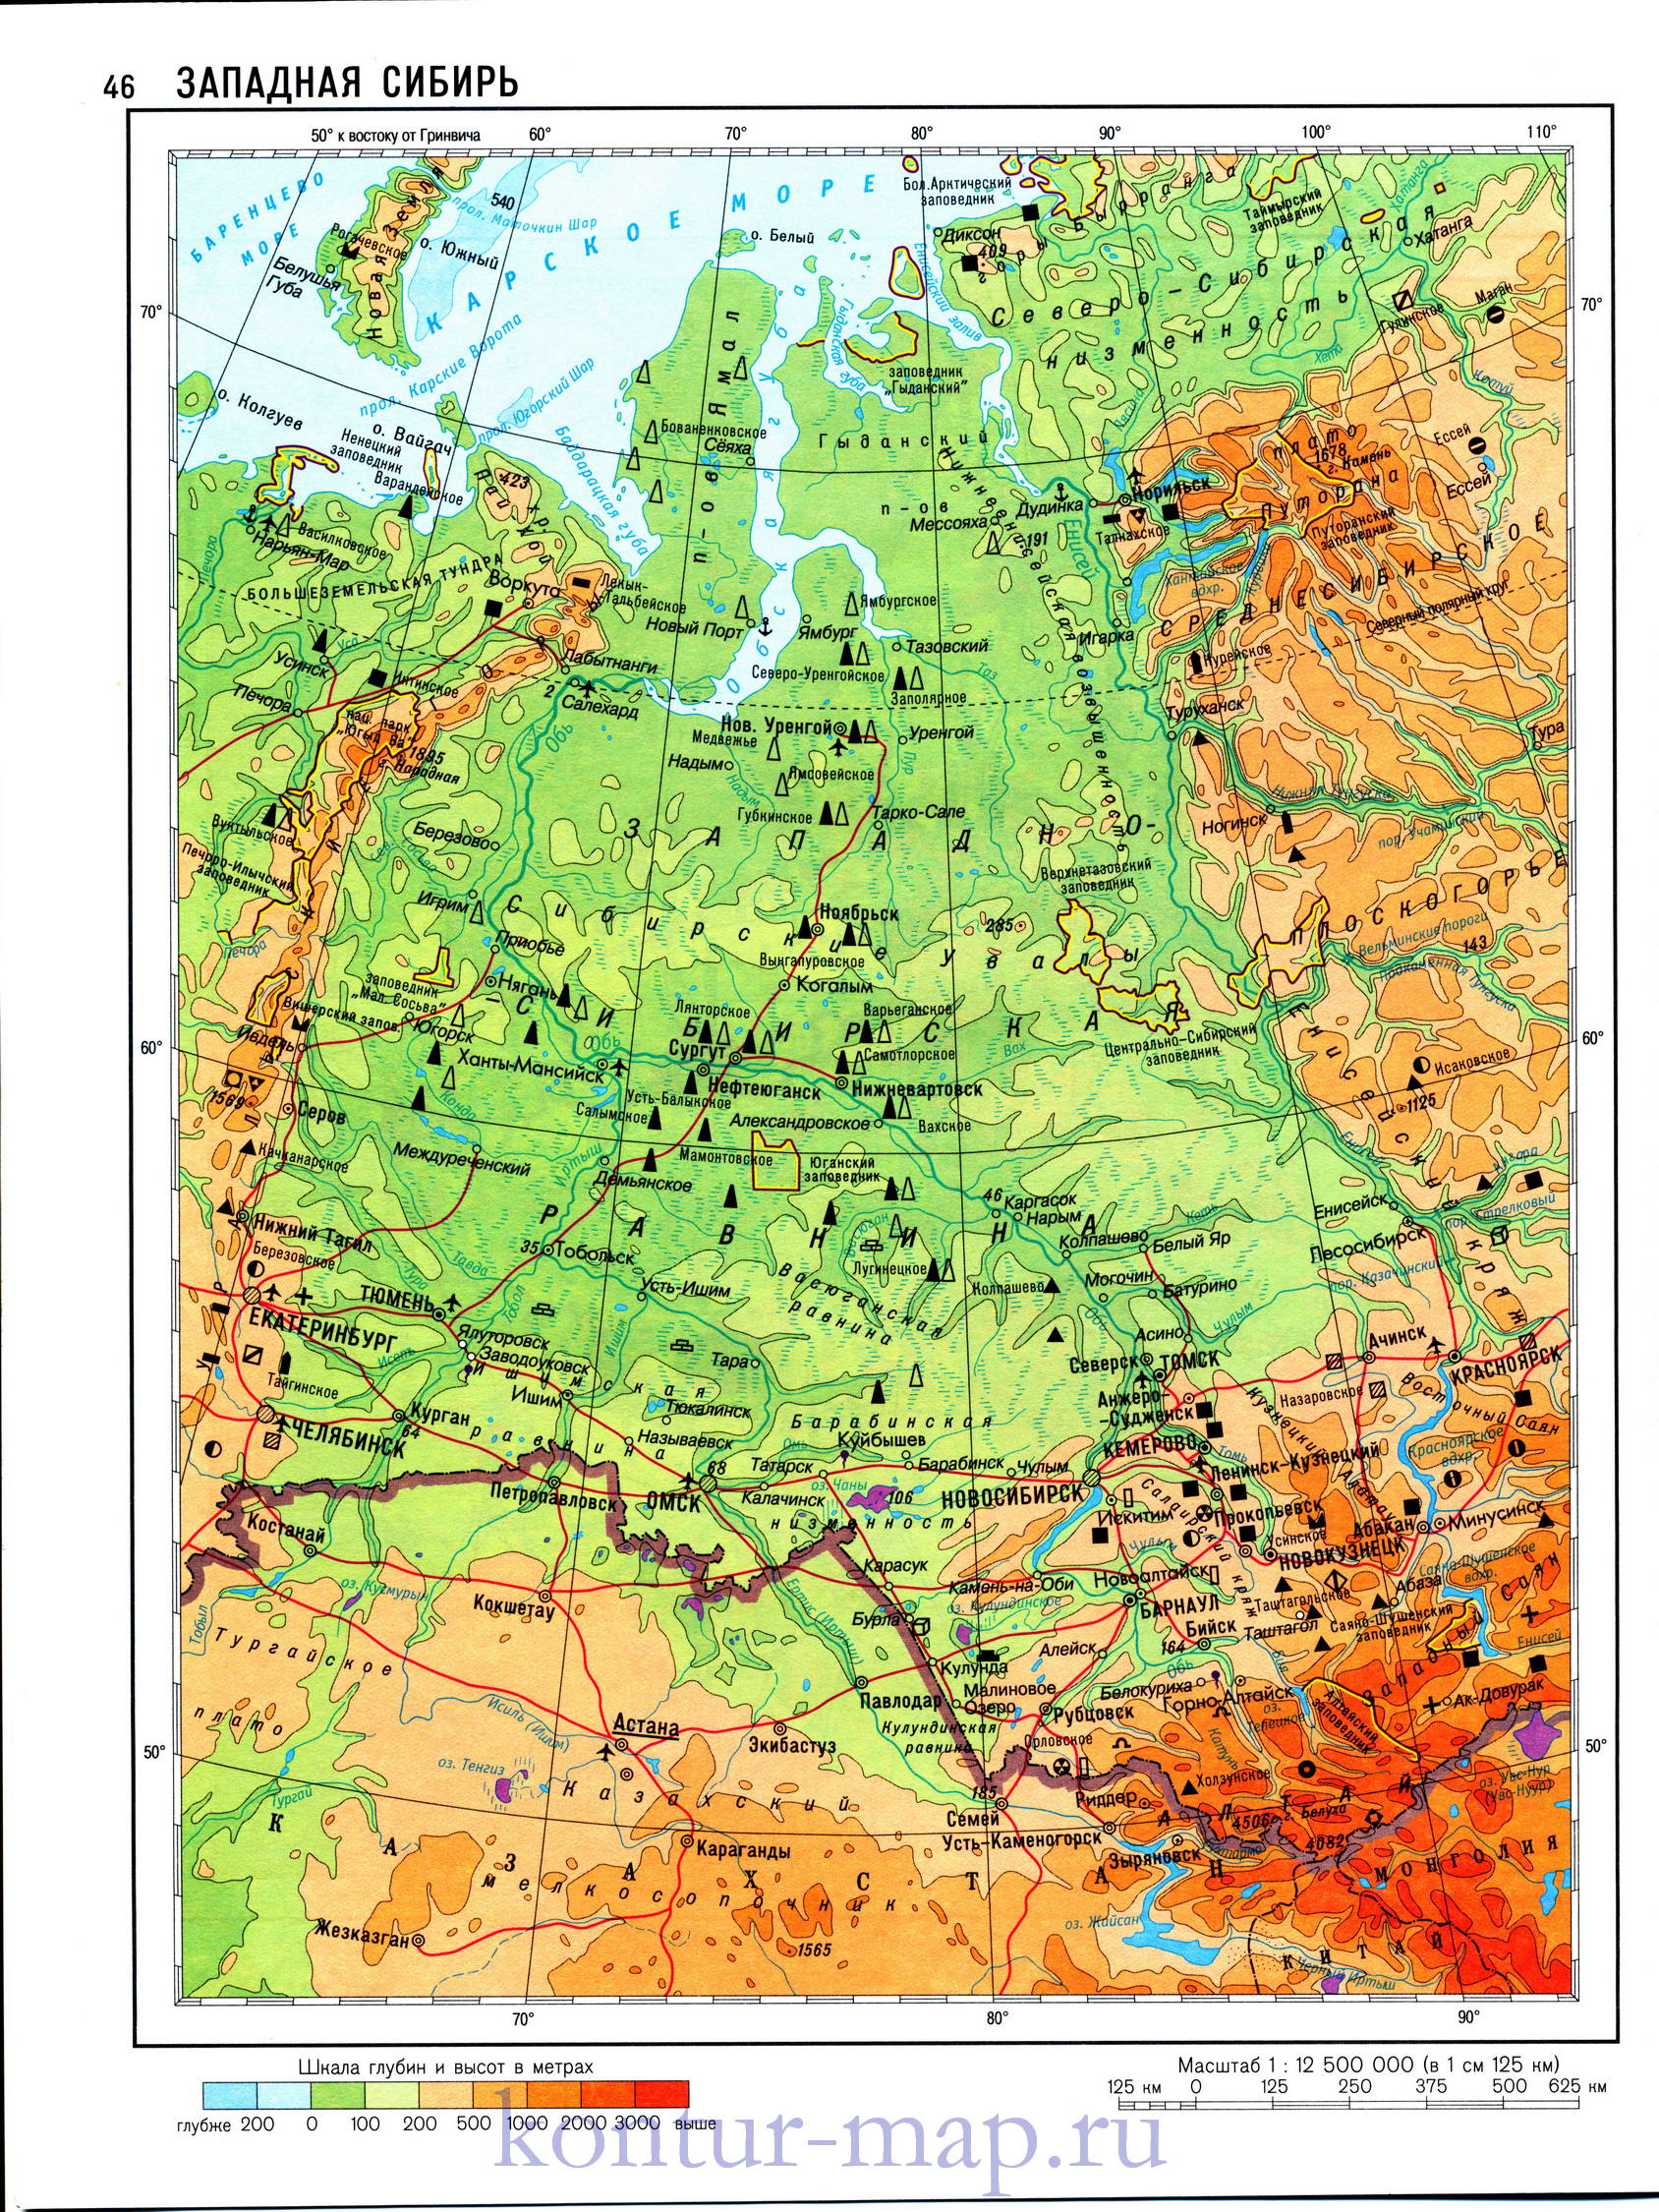 Карта западной Сибири. Физическая карта Западной Сибири. Скачать бесплатно физическую карту Западной Сибири, A0 - 